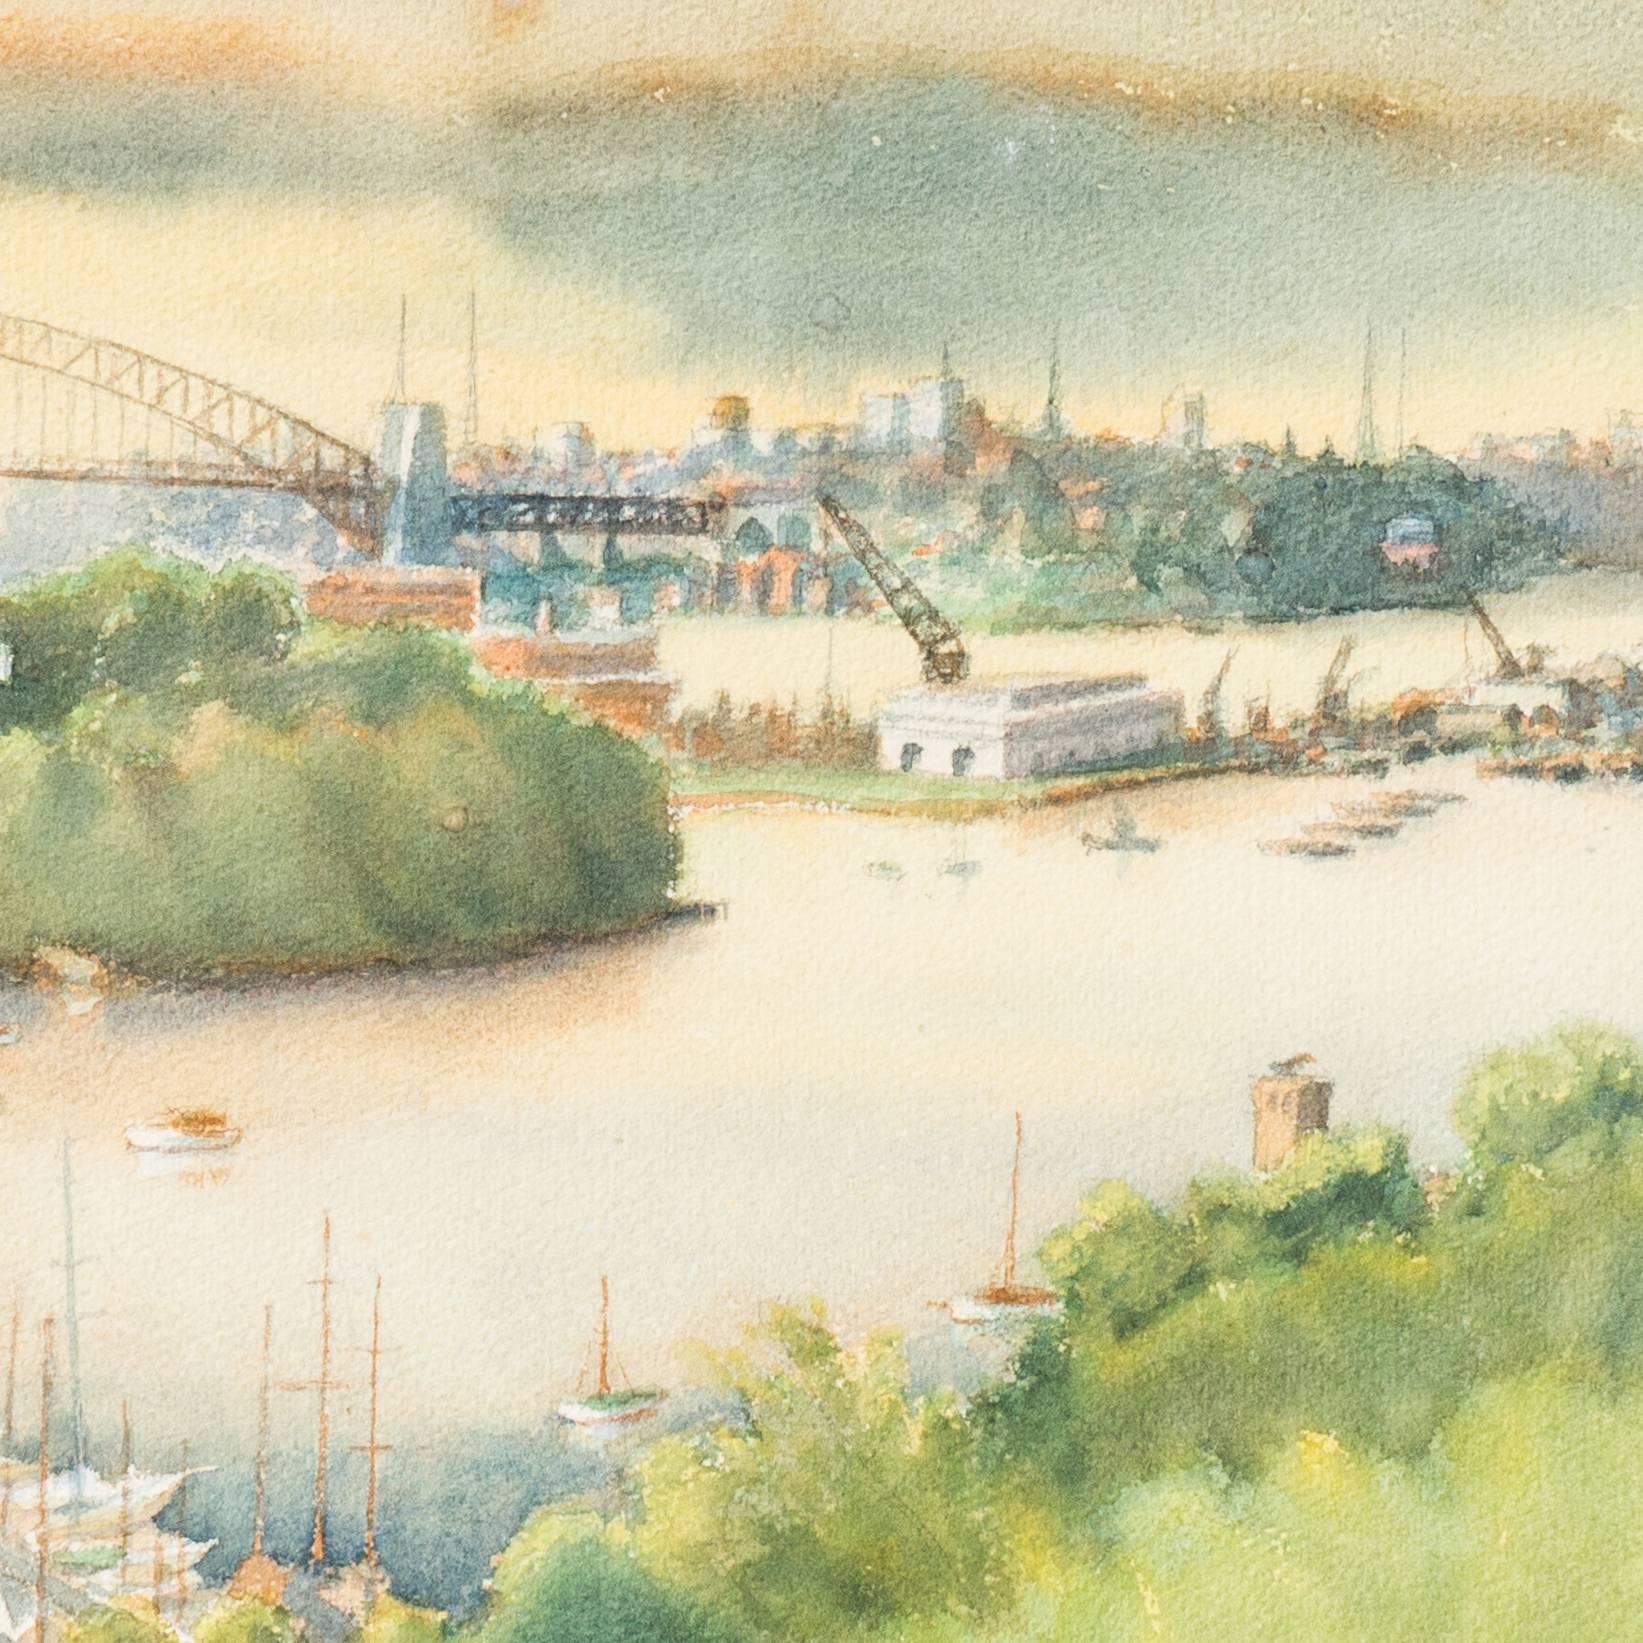 Dieses zarte Aquarell zeigt einen Panoramablick auf die australische Hauptstadt mit Blick auf die Sydney Harbor Bridge von diesem begehrten östlichen Vorort aus. 

Unten rechts signiert 